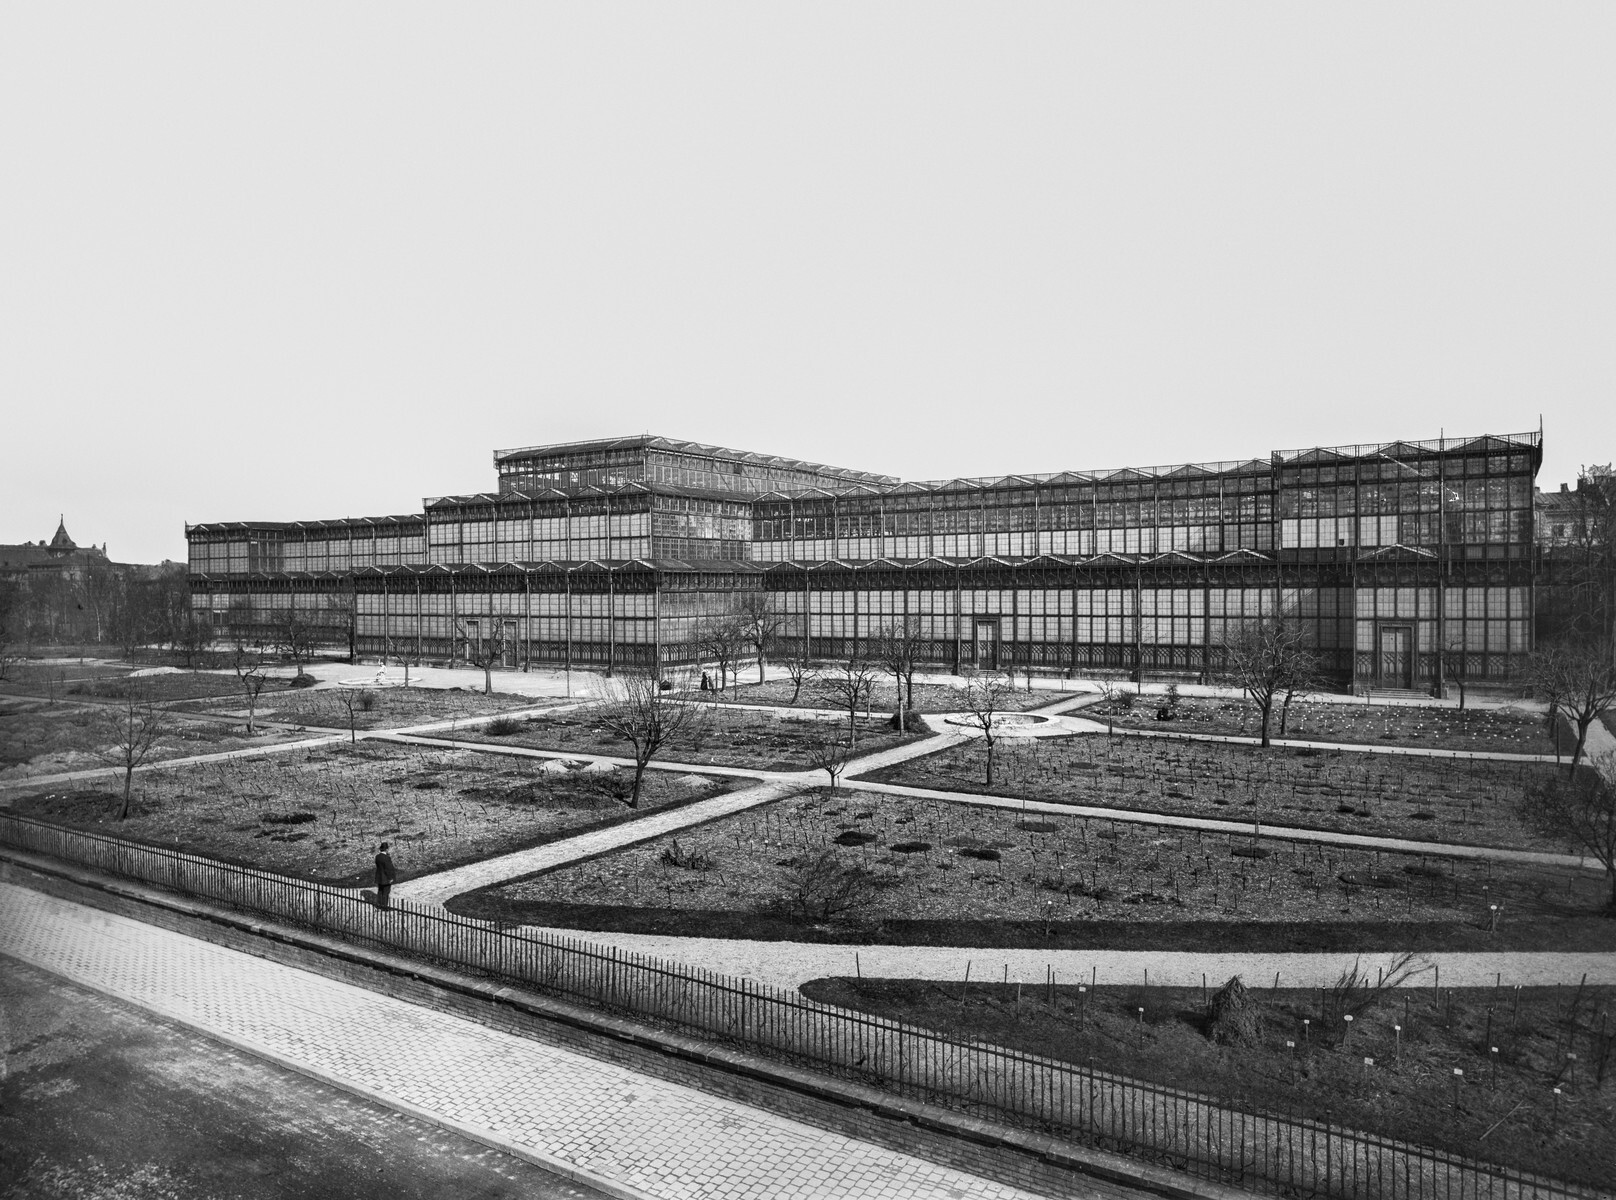 Historische Fotografie eines Gebäudes bestehend aus Glas.